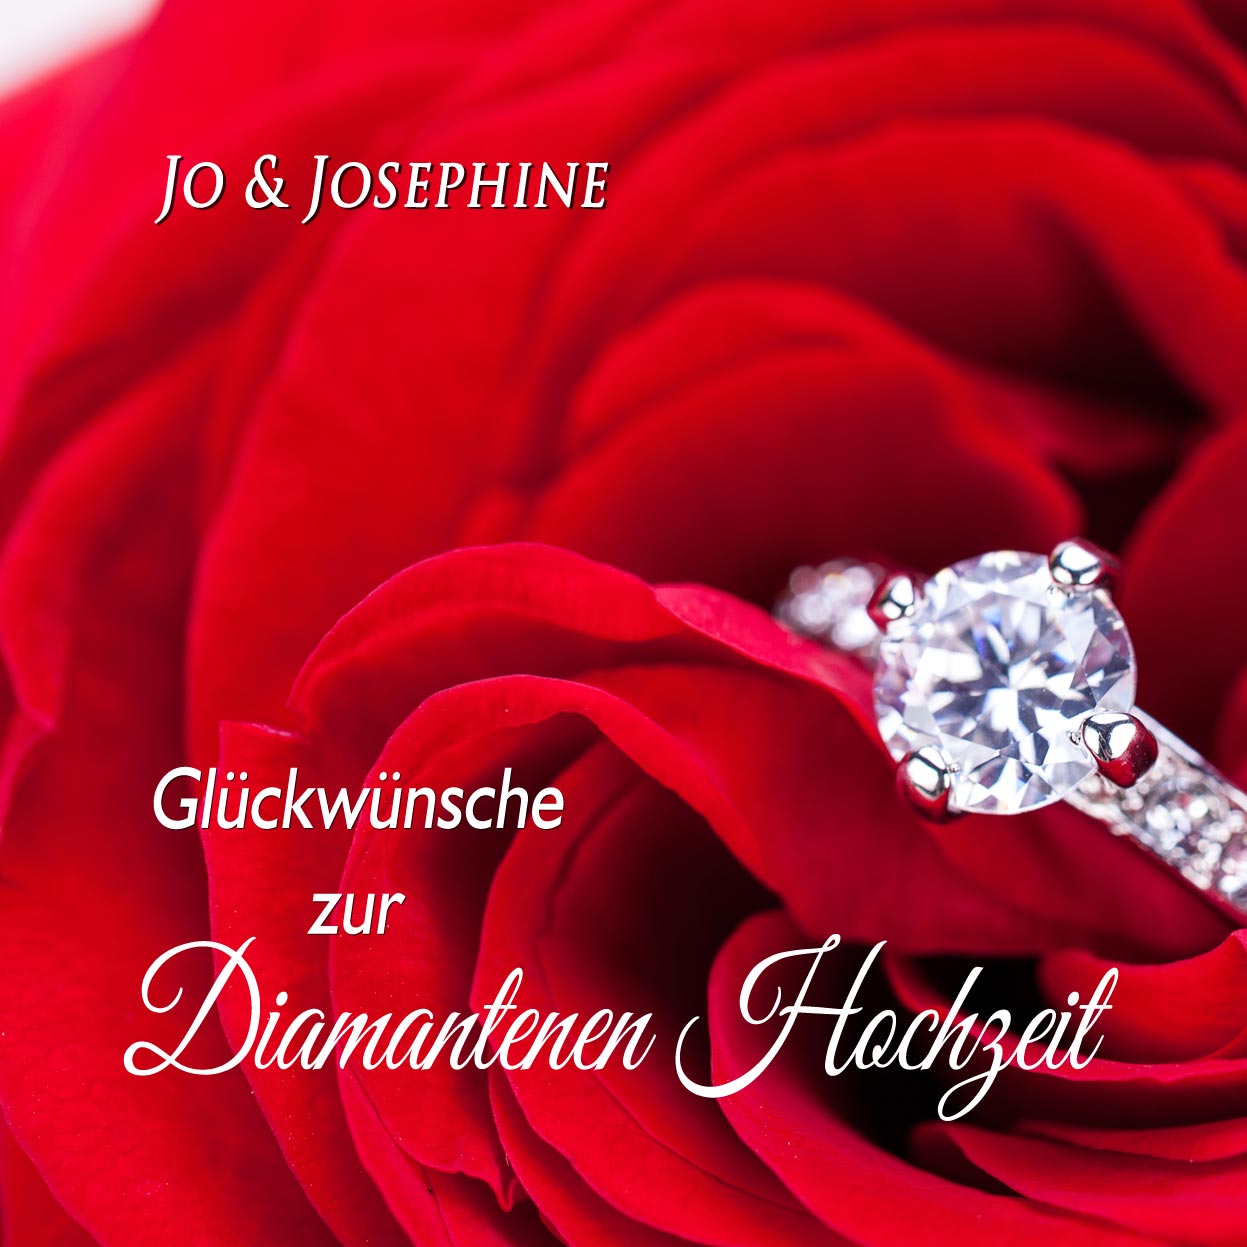 Gratulationslied Fur Diamantene Geschenk Zum Hochzeitstag